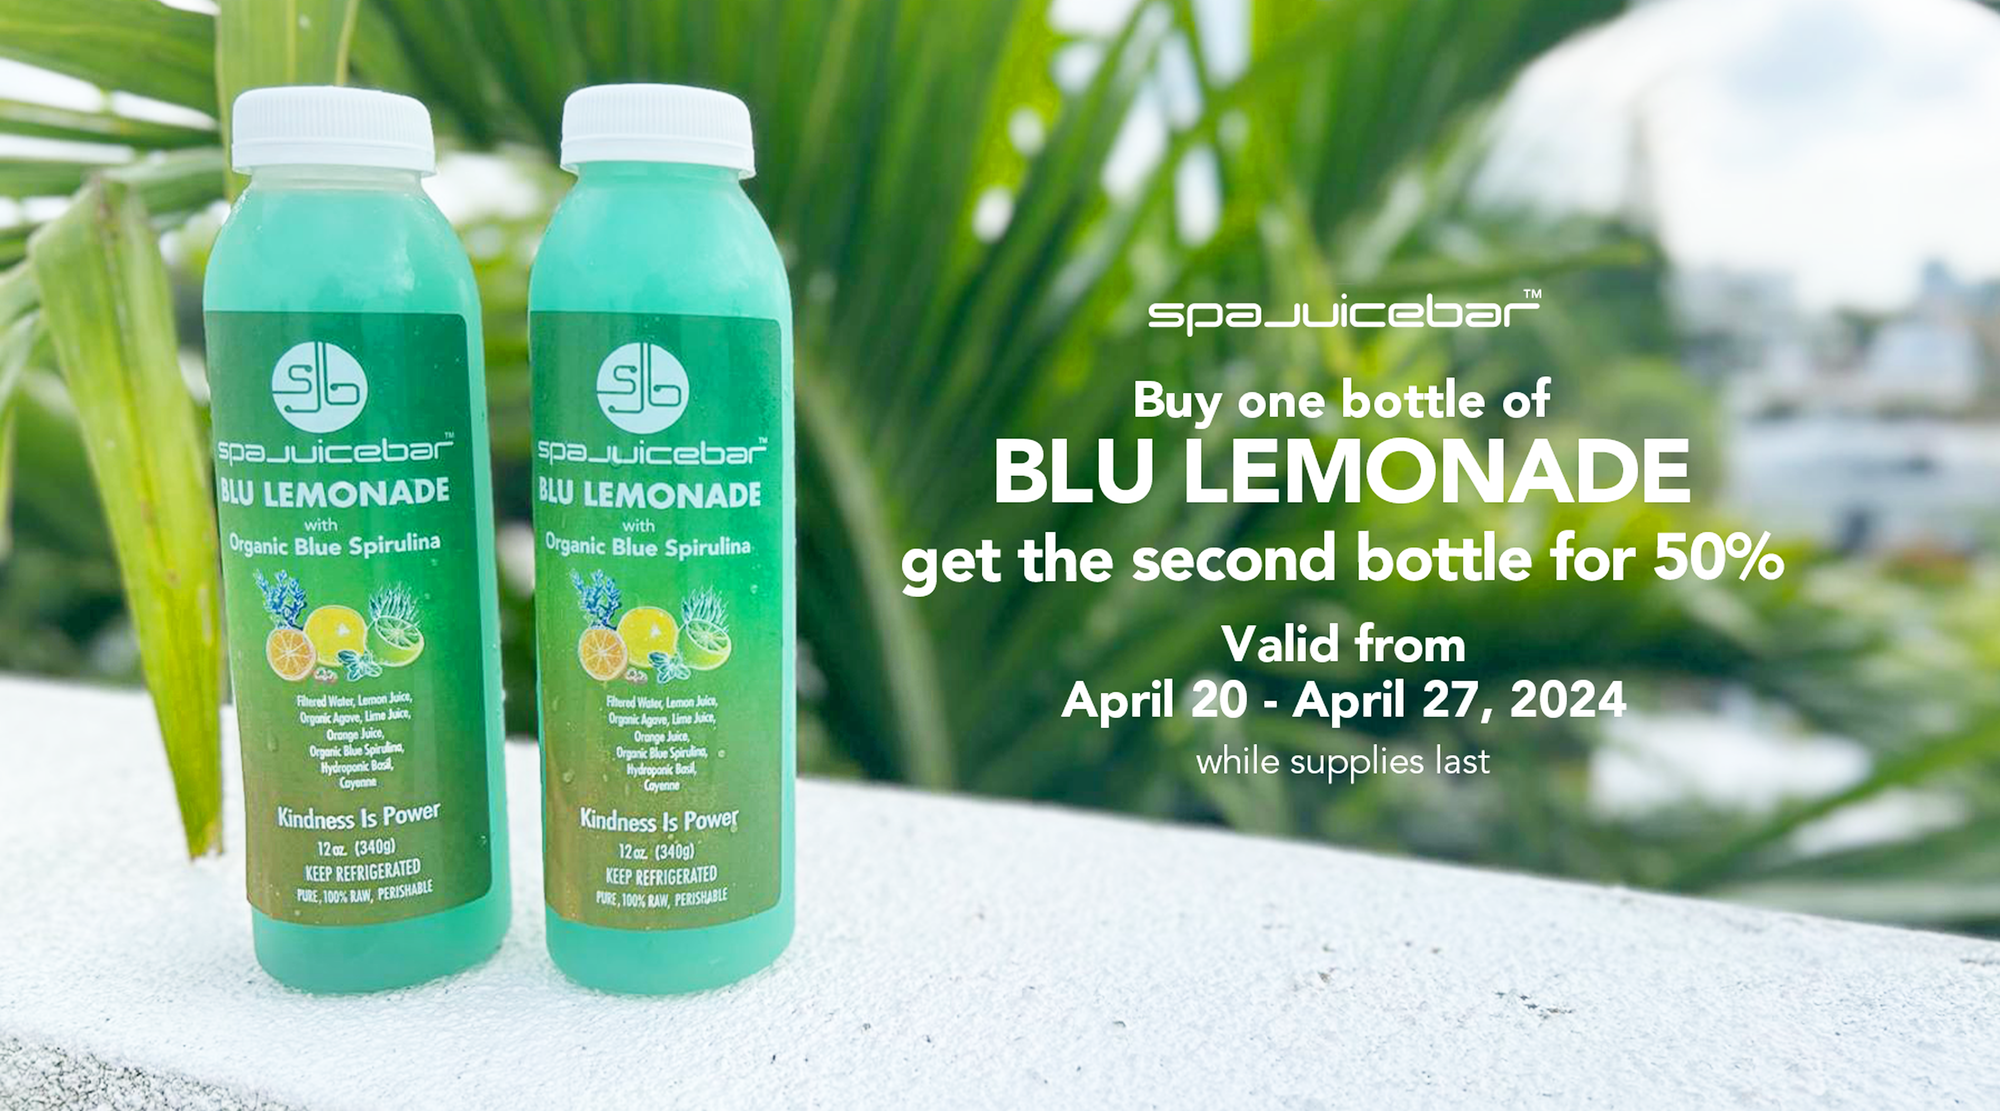 SpaJuiceBar buy one bottle of Blu Lemonade get the 2nd bottle for 50% off valid April 20- April 27, 2024